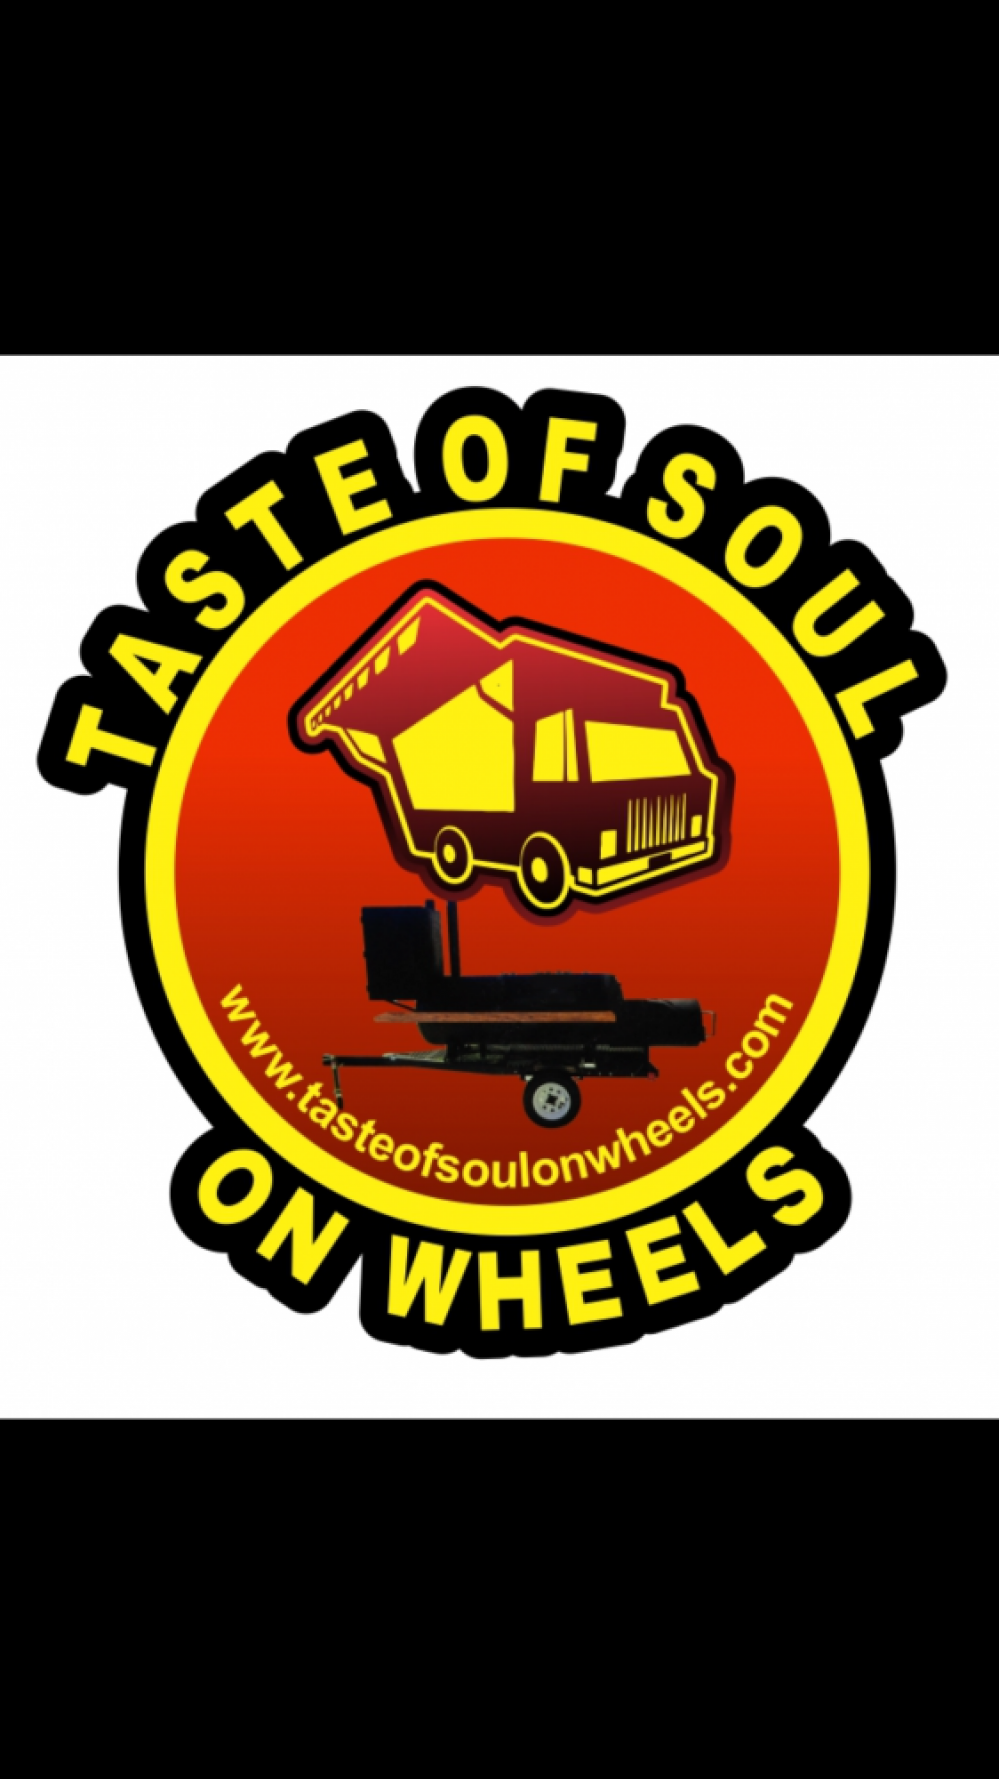 Taste of Soul on Wheels